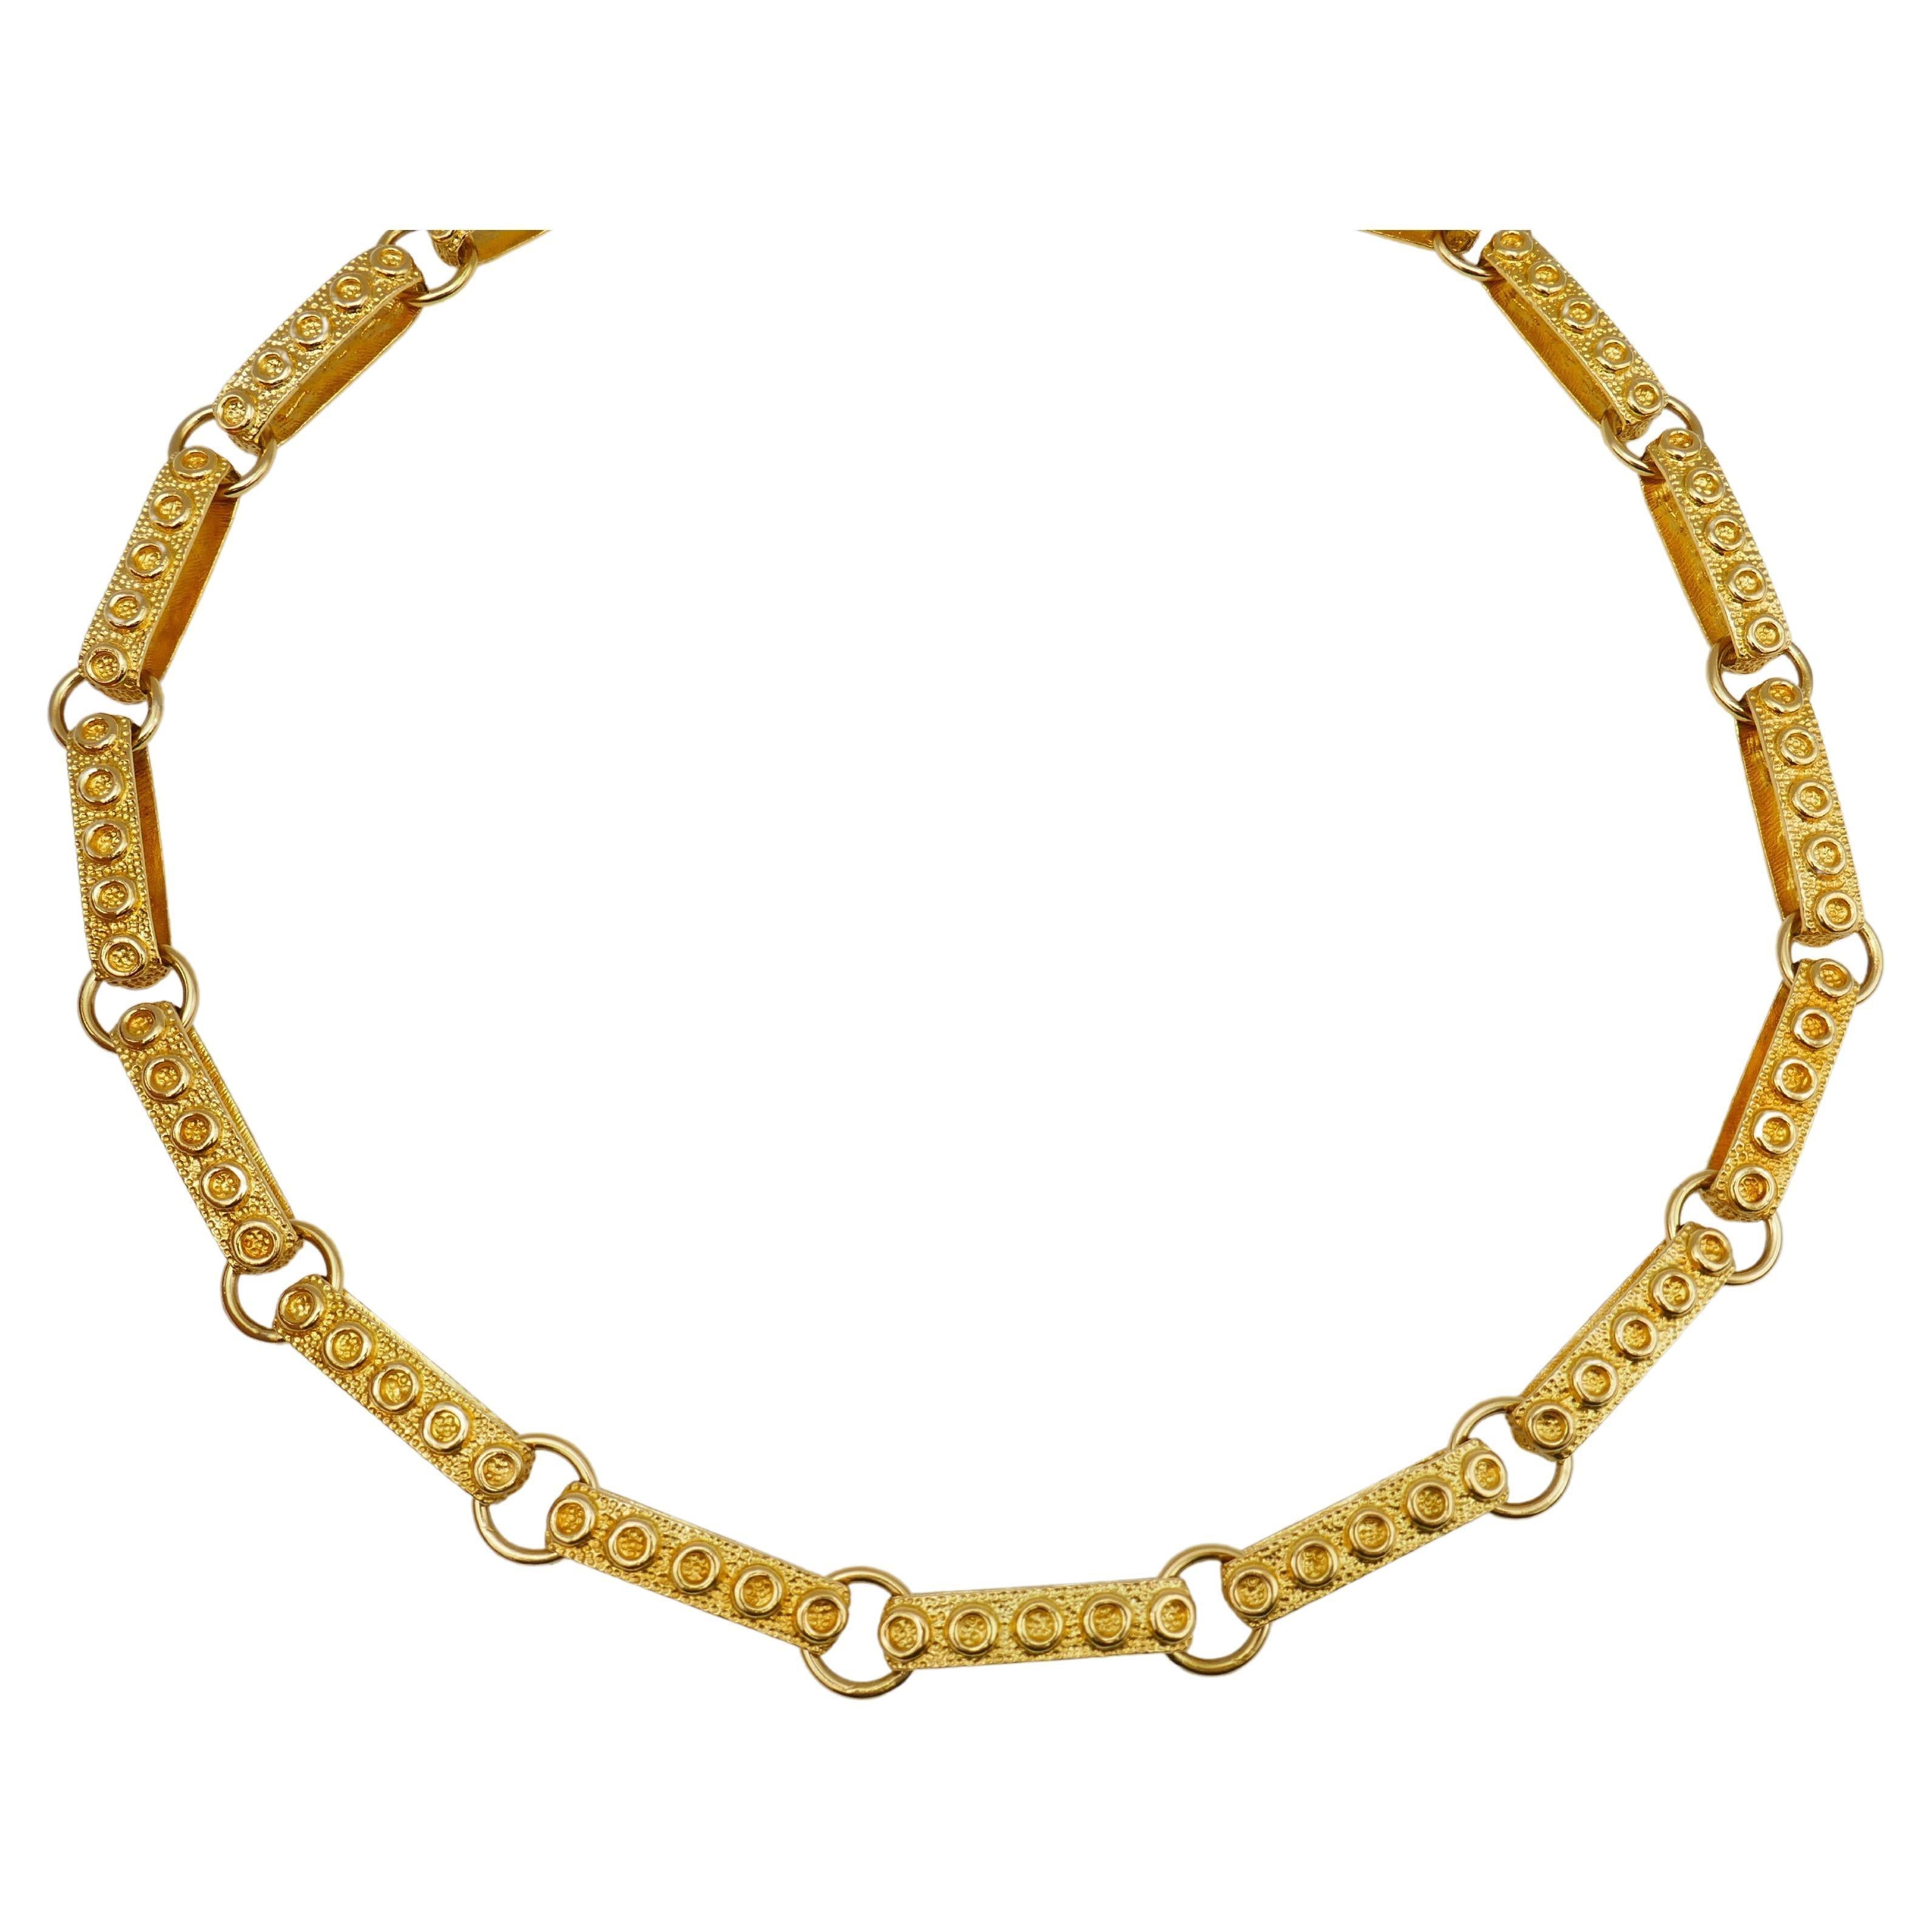 Diese Halskette aus 14-karätigem Gold ist ein großartiges Beispiel für Schmuck aus den 1950er Jahren und weist alle Merkmale der Nachkriegszeit auf. Es ist ein mutiges, fröhliches und aufsehenerregendes Stück. Die Glieder bestehen aus langen